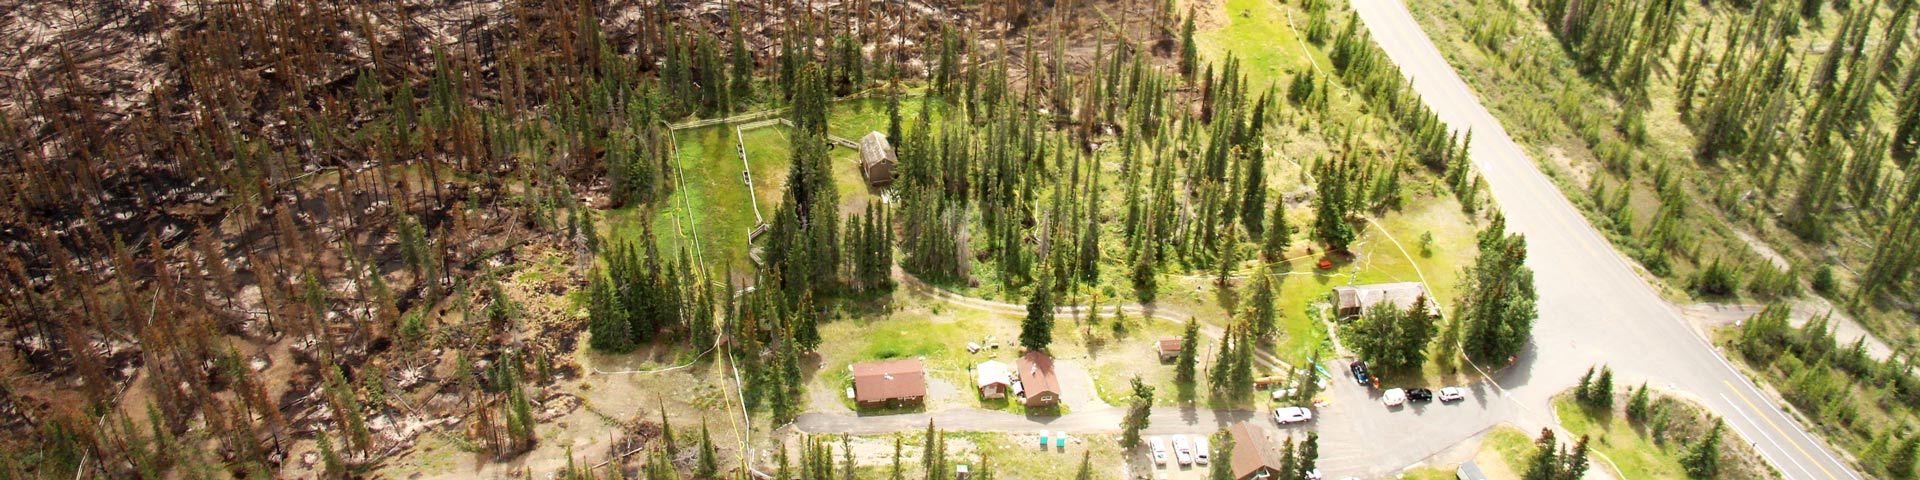 Une image saisissante montrant des arbres brûlés à proximité des cabanes des gardes forestiers de la Saskatchewan. Les cabanes des gardiens ont été protégées à l’aide d’équipements de protection structurelle et d’éclaircissements de la forêt avant les activités de brûlage dirigé.